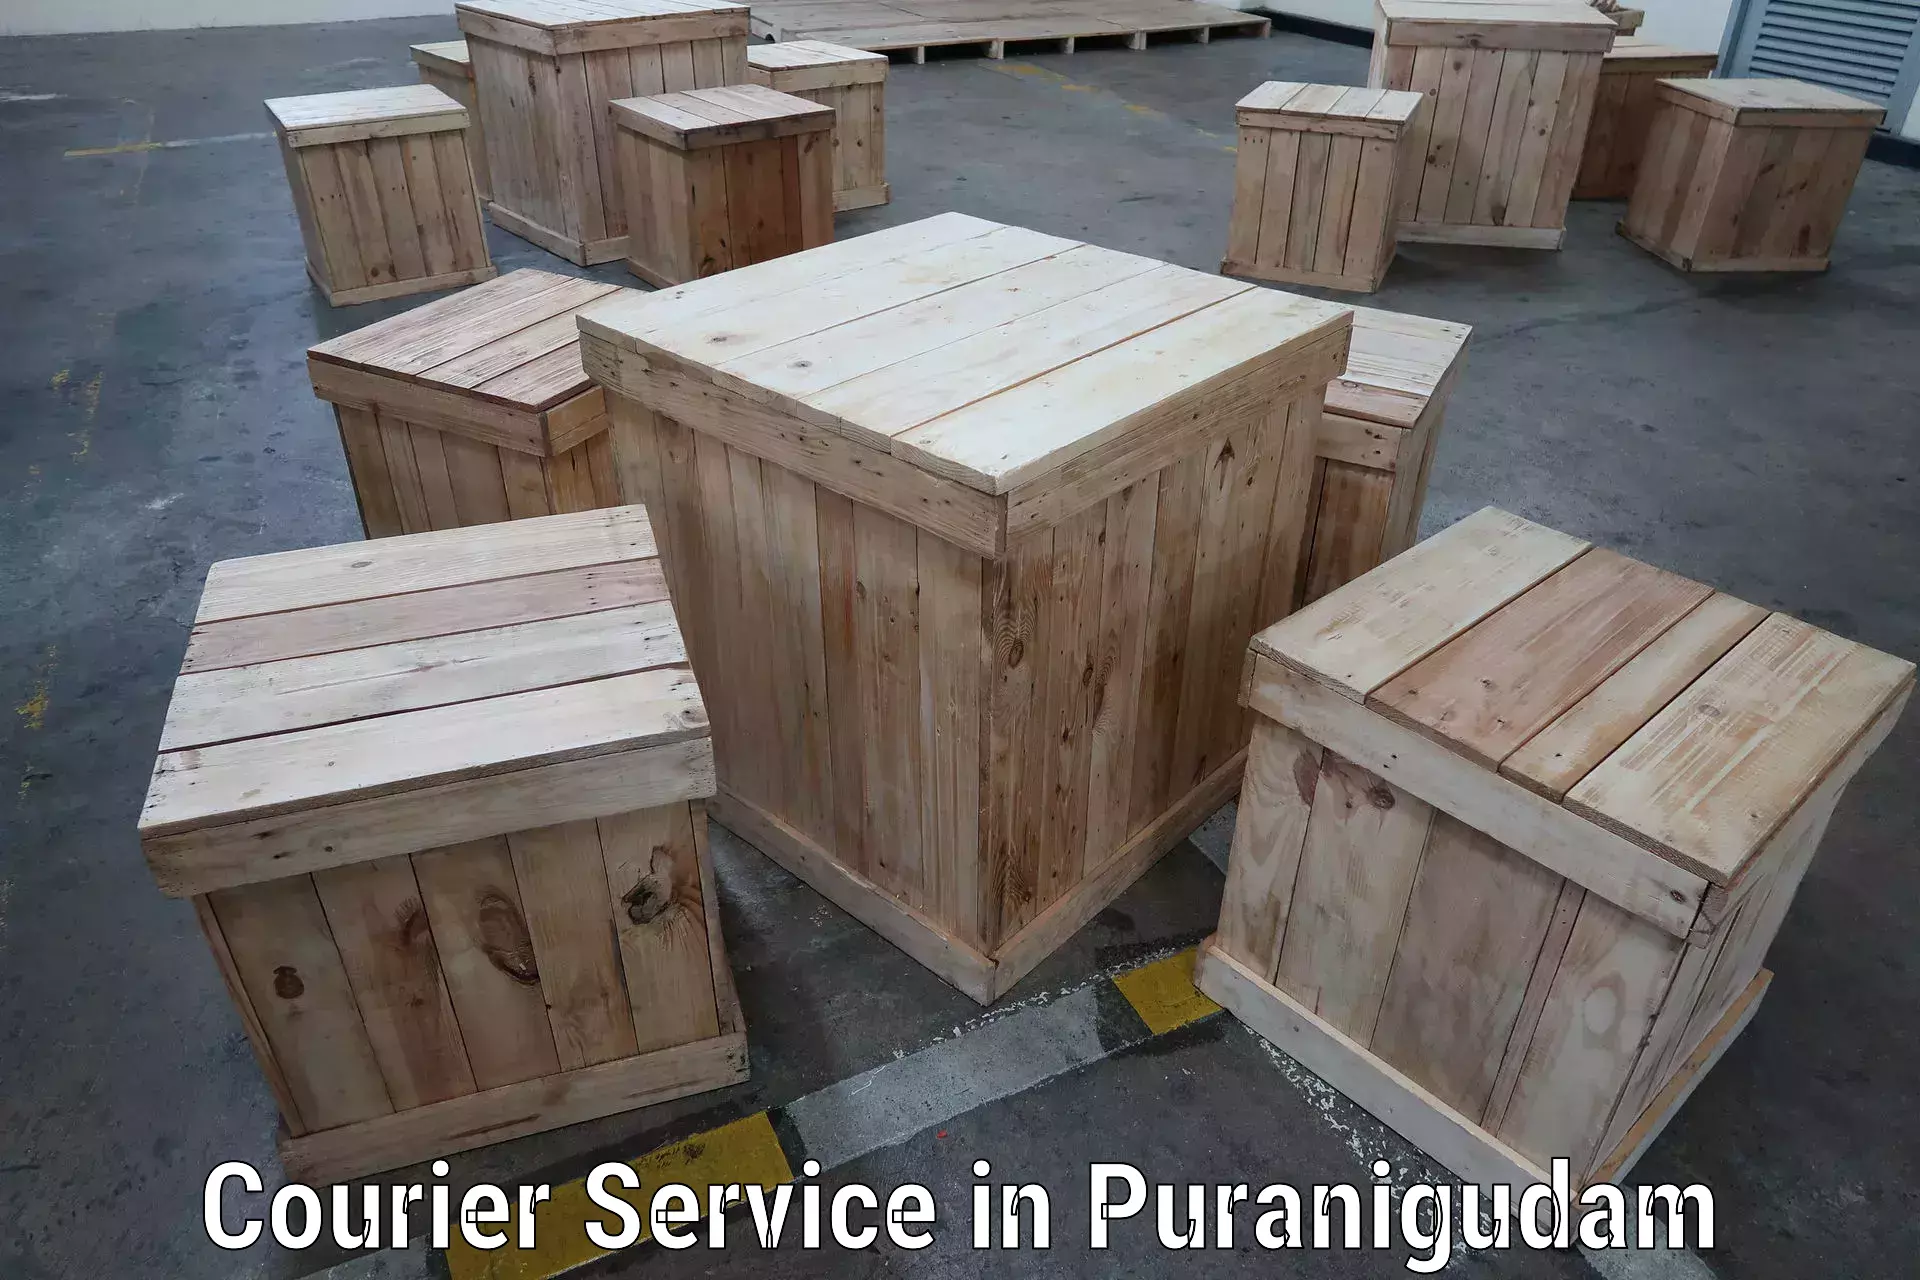 24-hour courier service in Puranigudam